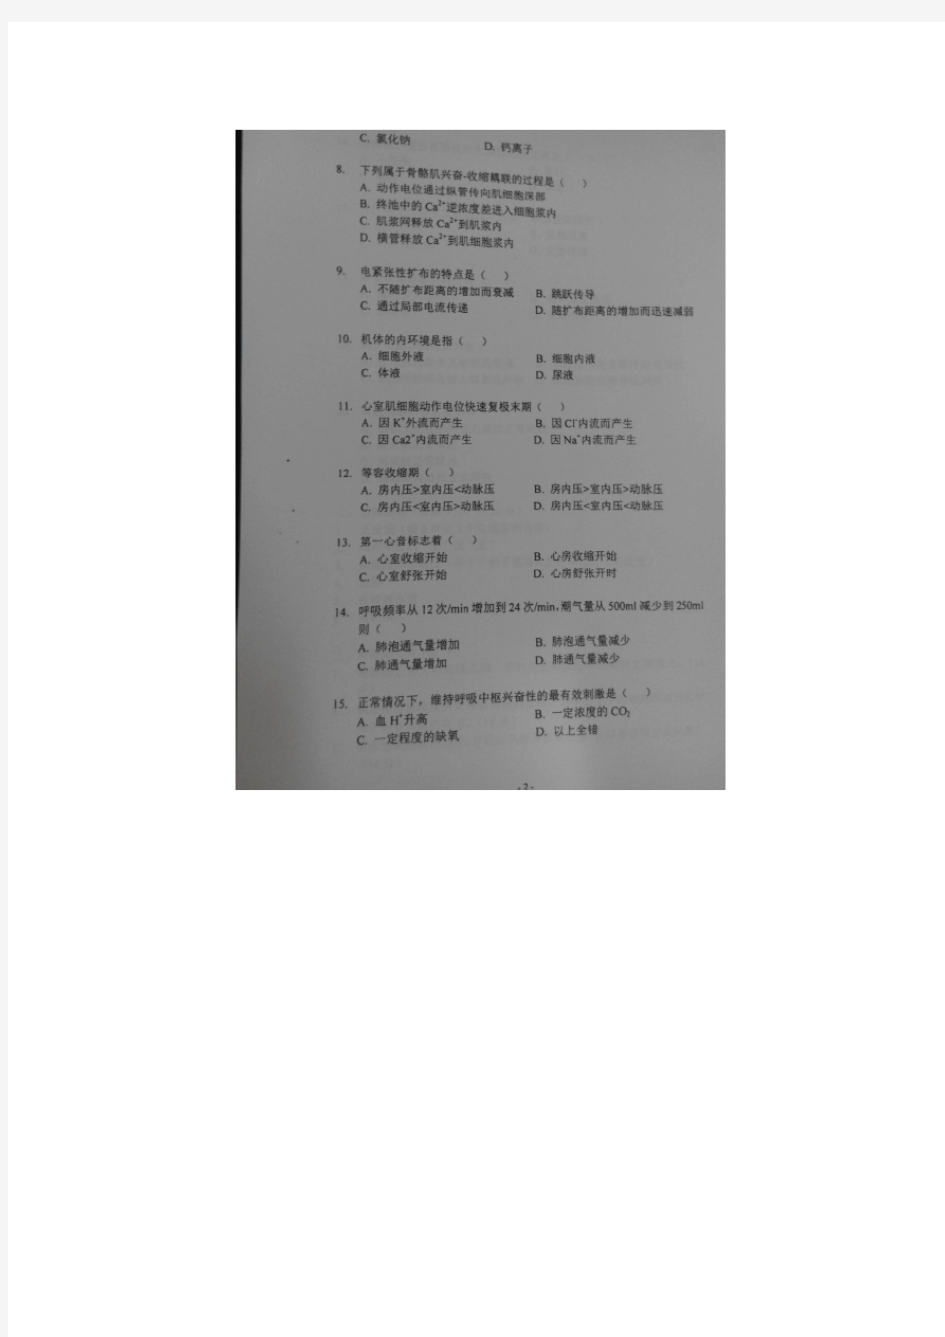 2014年上海理工大学考研试题844生理学